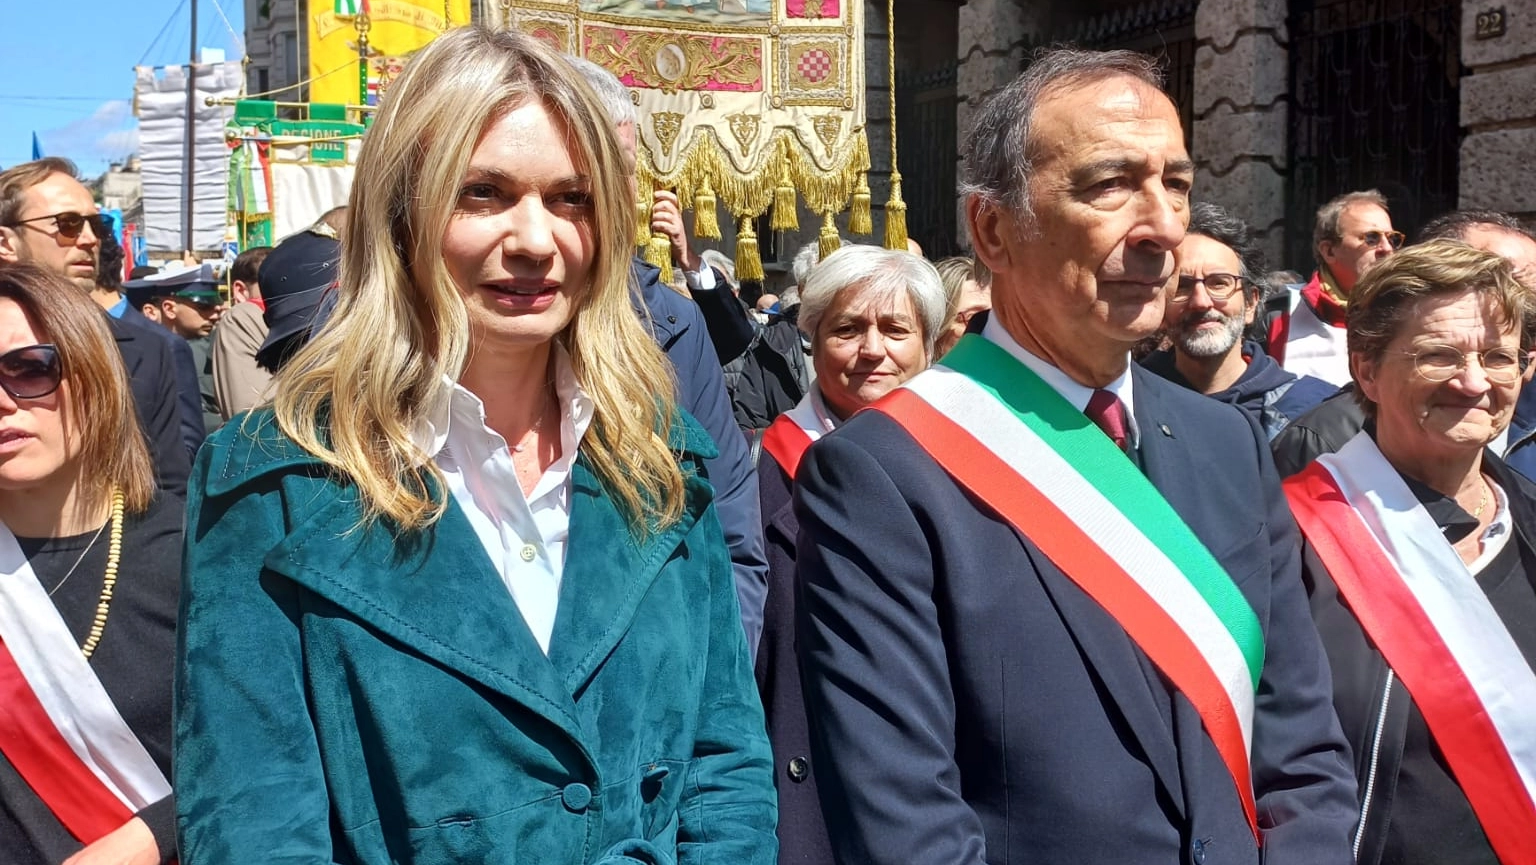 Il sindaco Giuseppe Sala insieme alla compagna al corteo del 25 aprile a Milano